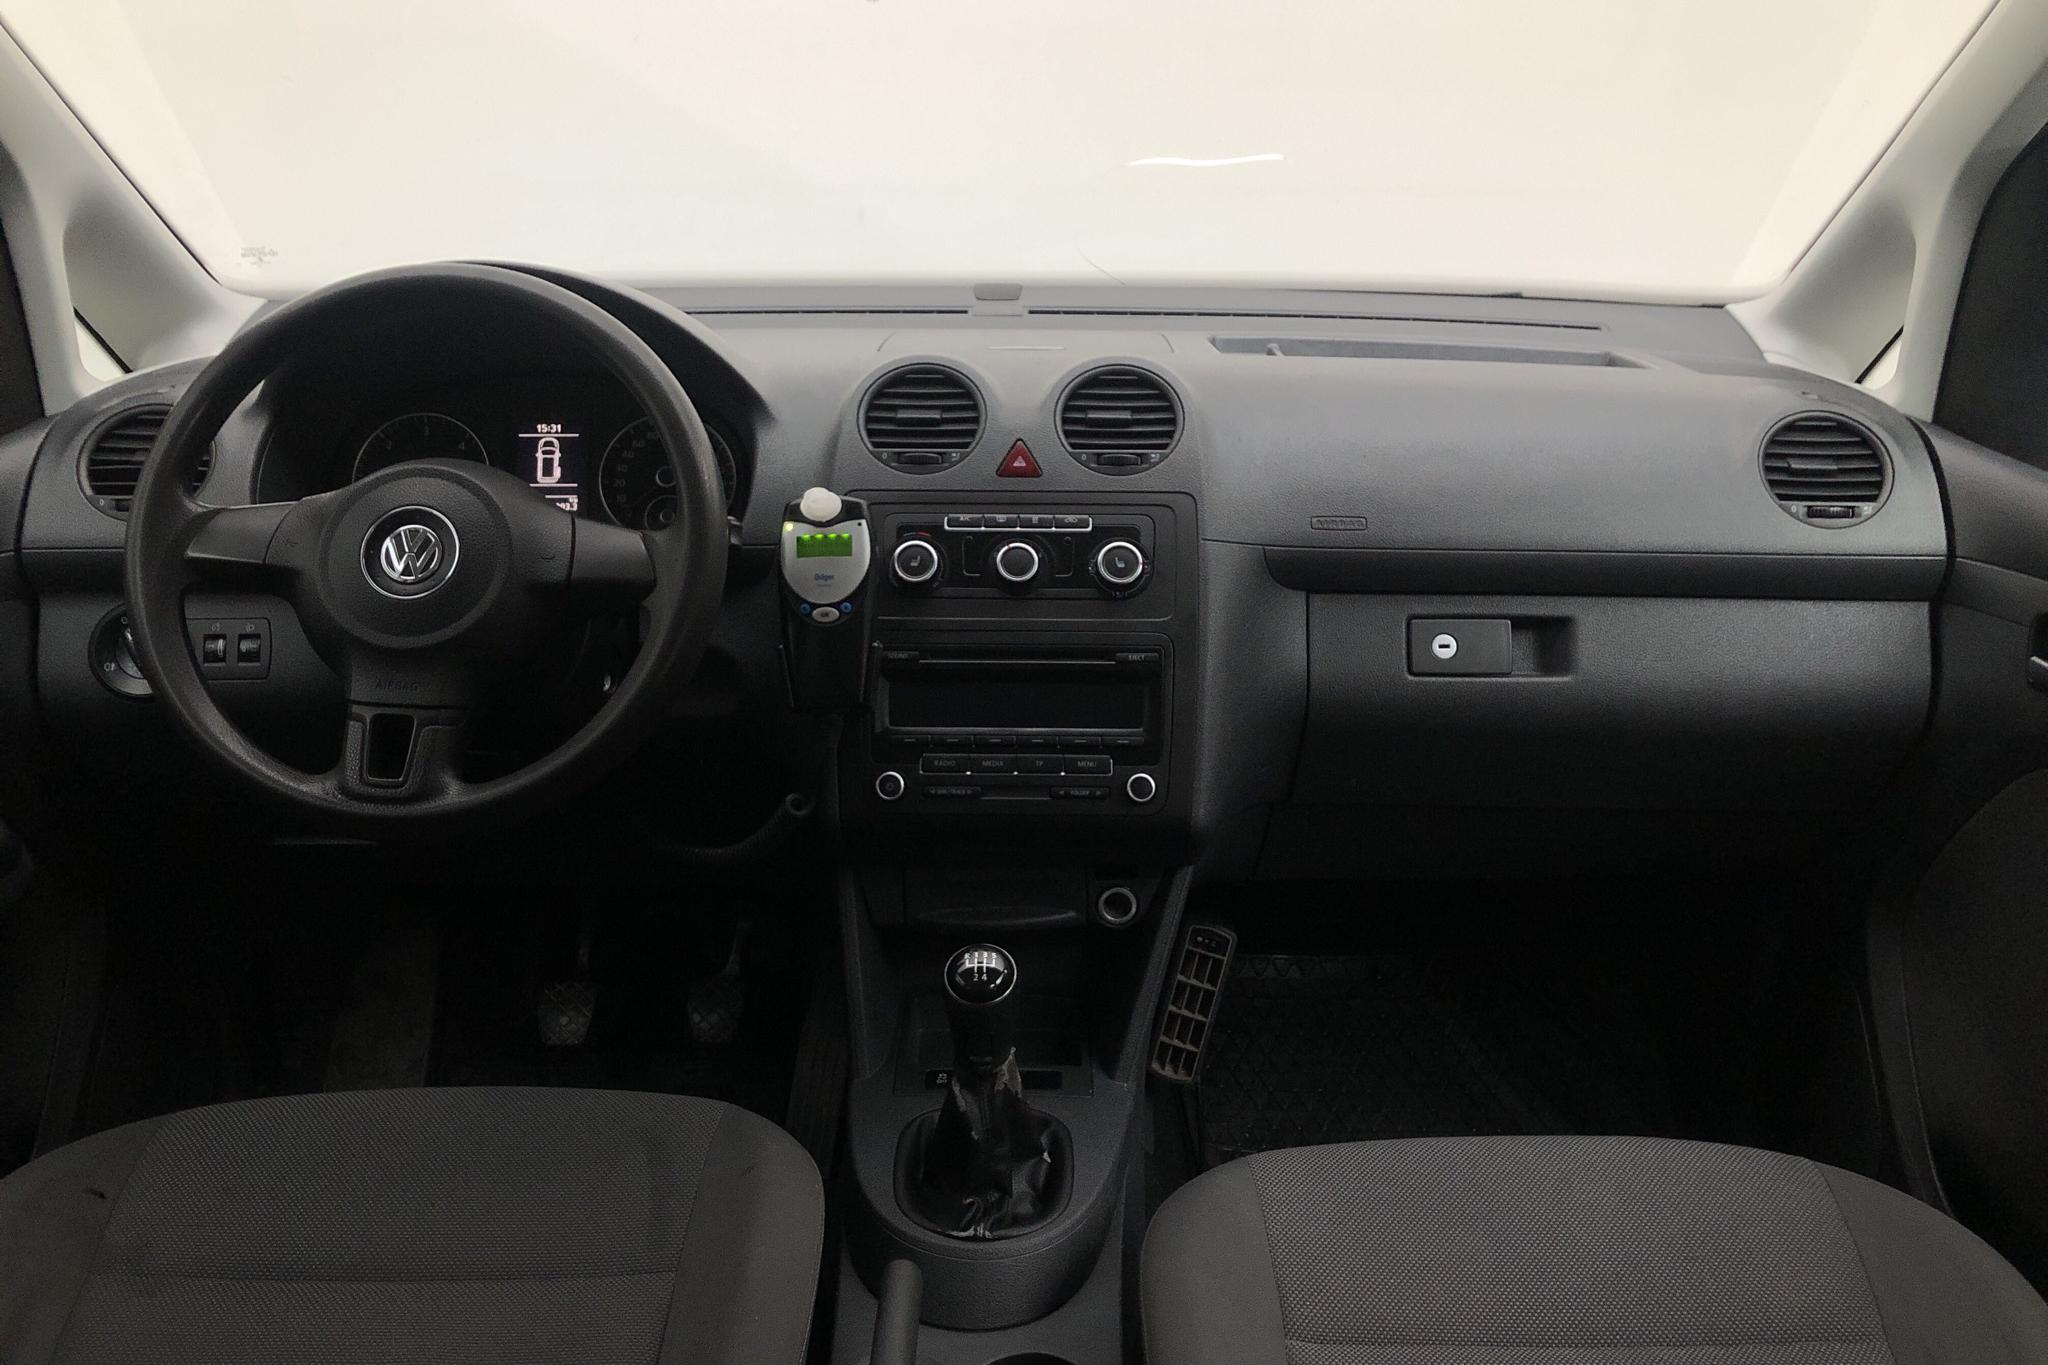 VW Caddy MPV Maxi 1.6 TDI (102hk) - 19 133 mil - Manuell - vit - 2014